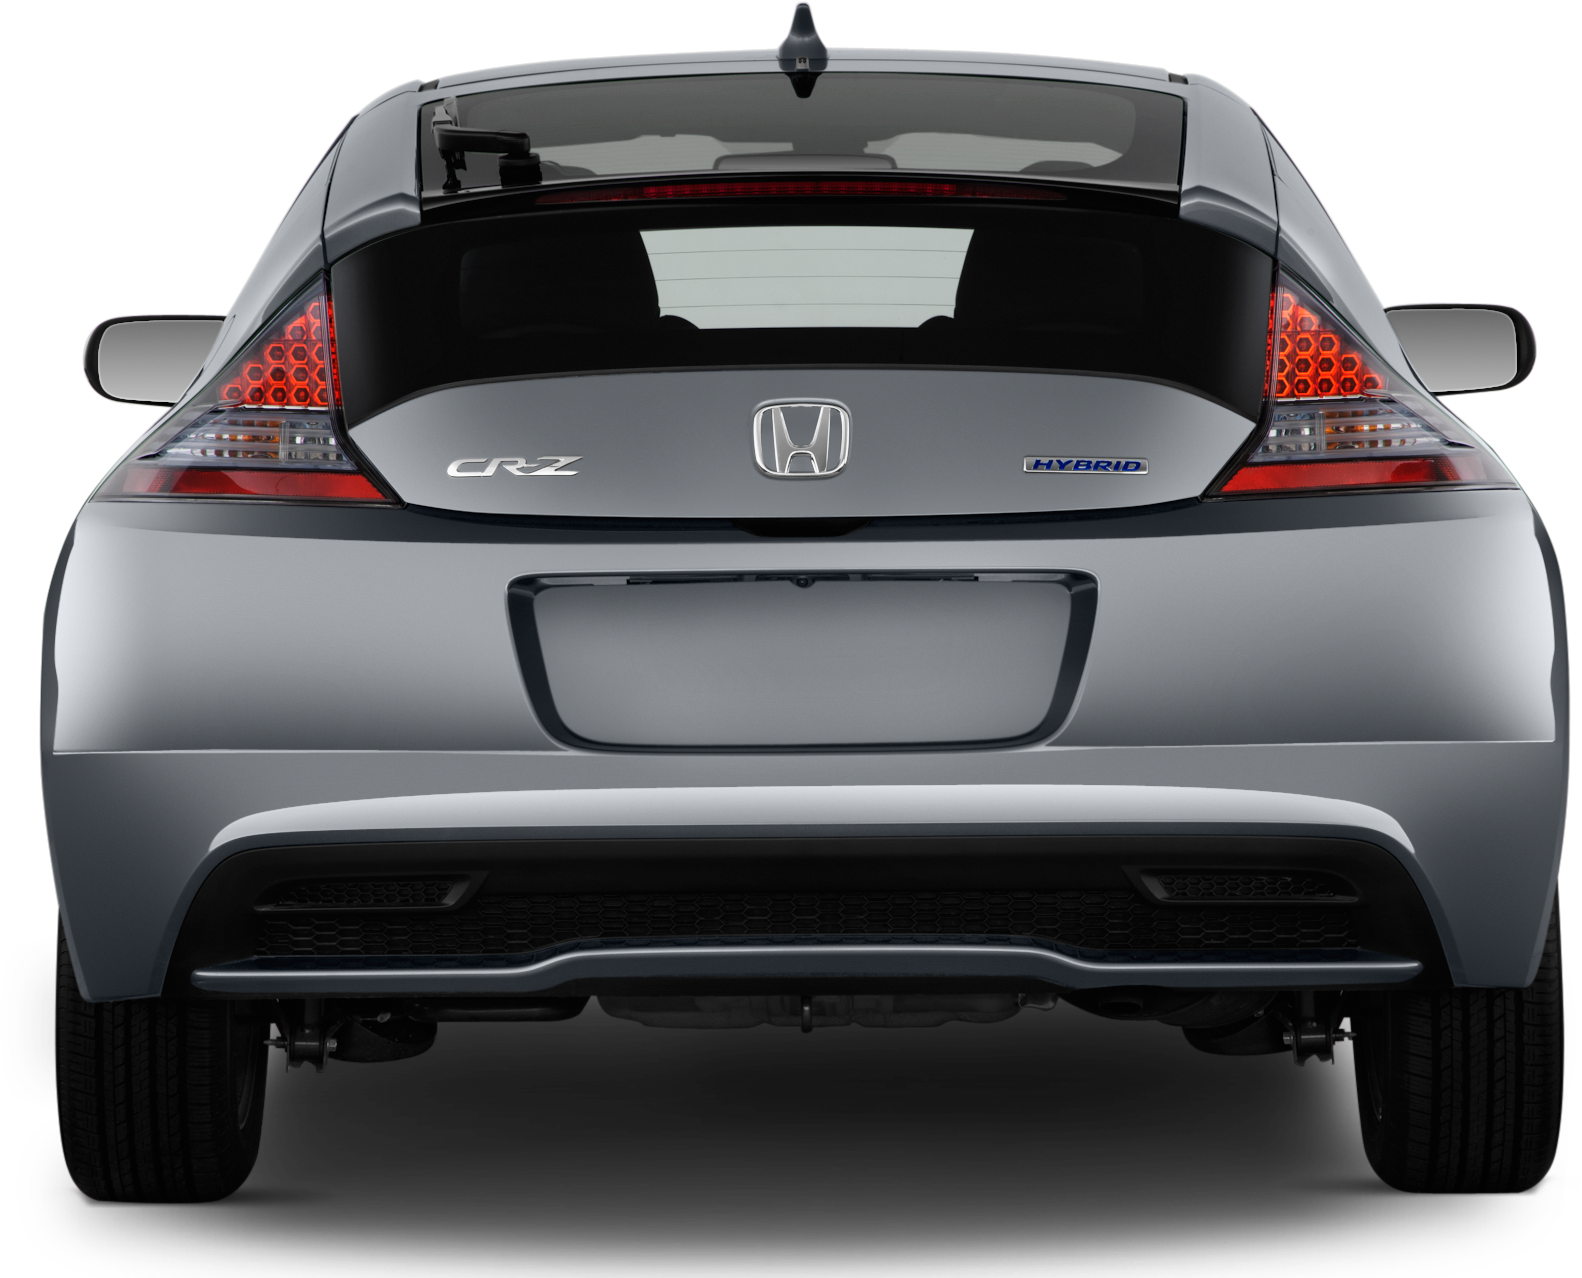 67 - - Cr Z Honda 2013 Hatchback (2048x1360), Png Download